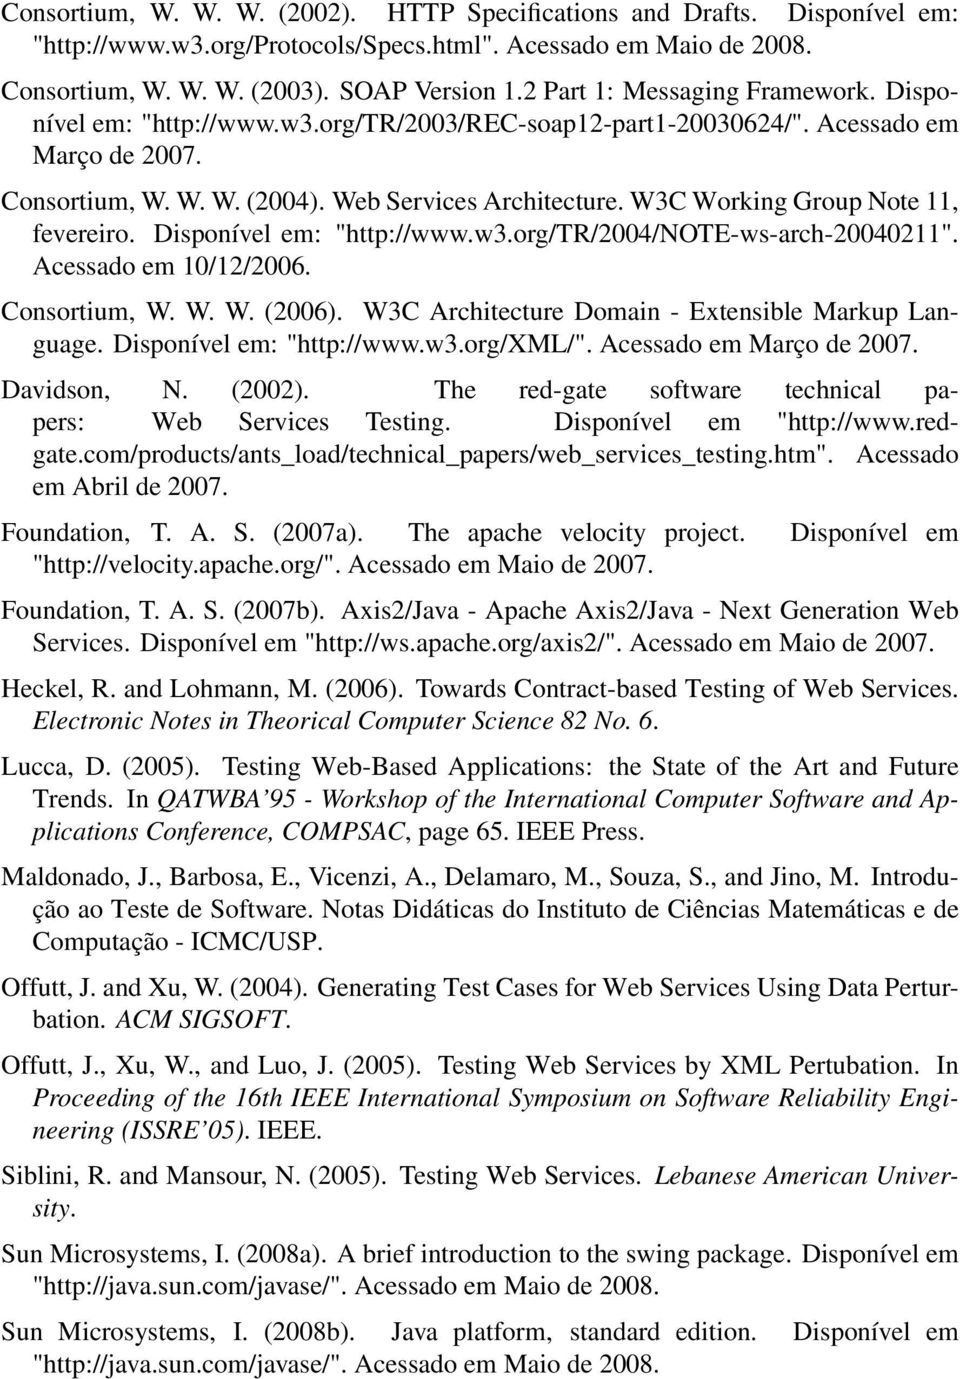 W3C Working Group Note 11, fevereiro. Disponível em: "http://www.w3.org/tr/2004/note-ws-arch-20040211". Acessado em 10/12/2006. Consortium, W. W. W. (2006).